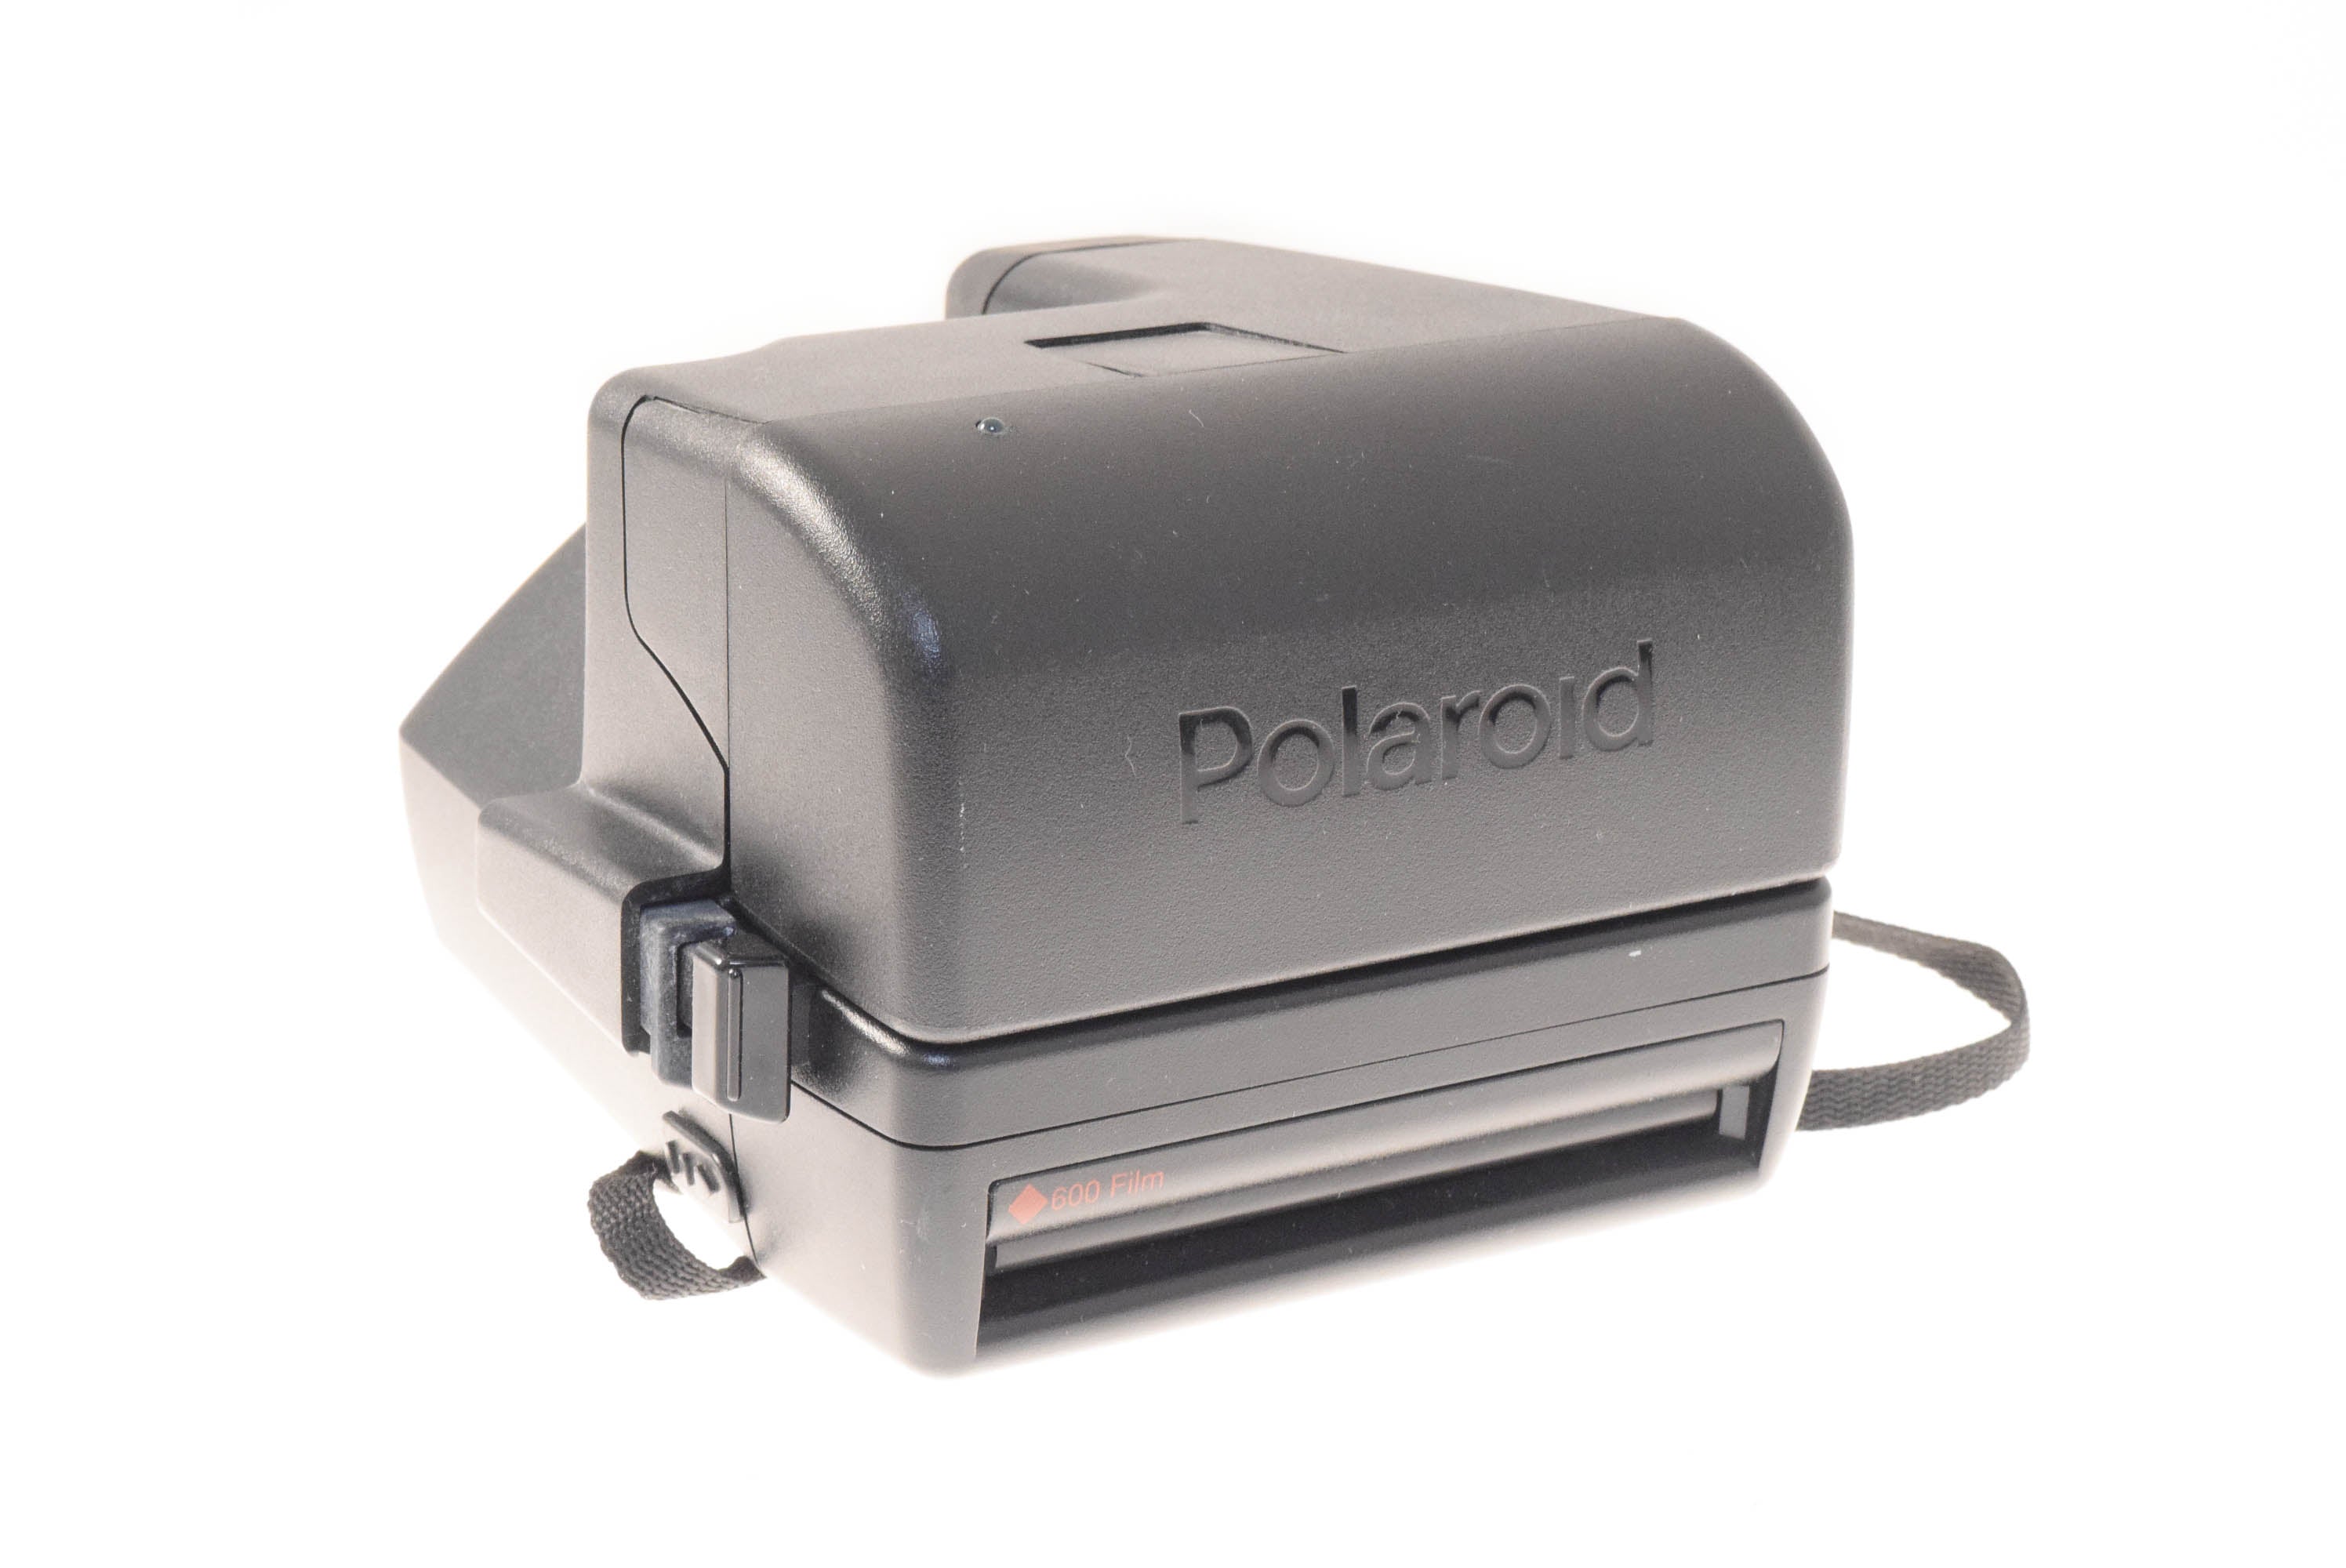 Polaroid Color 600 Film – Kamerastore